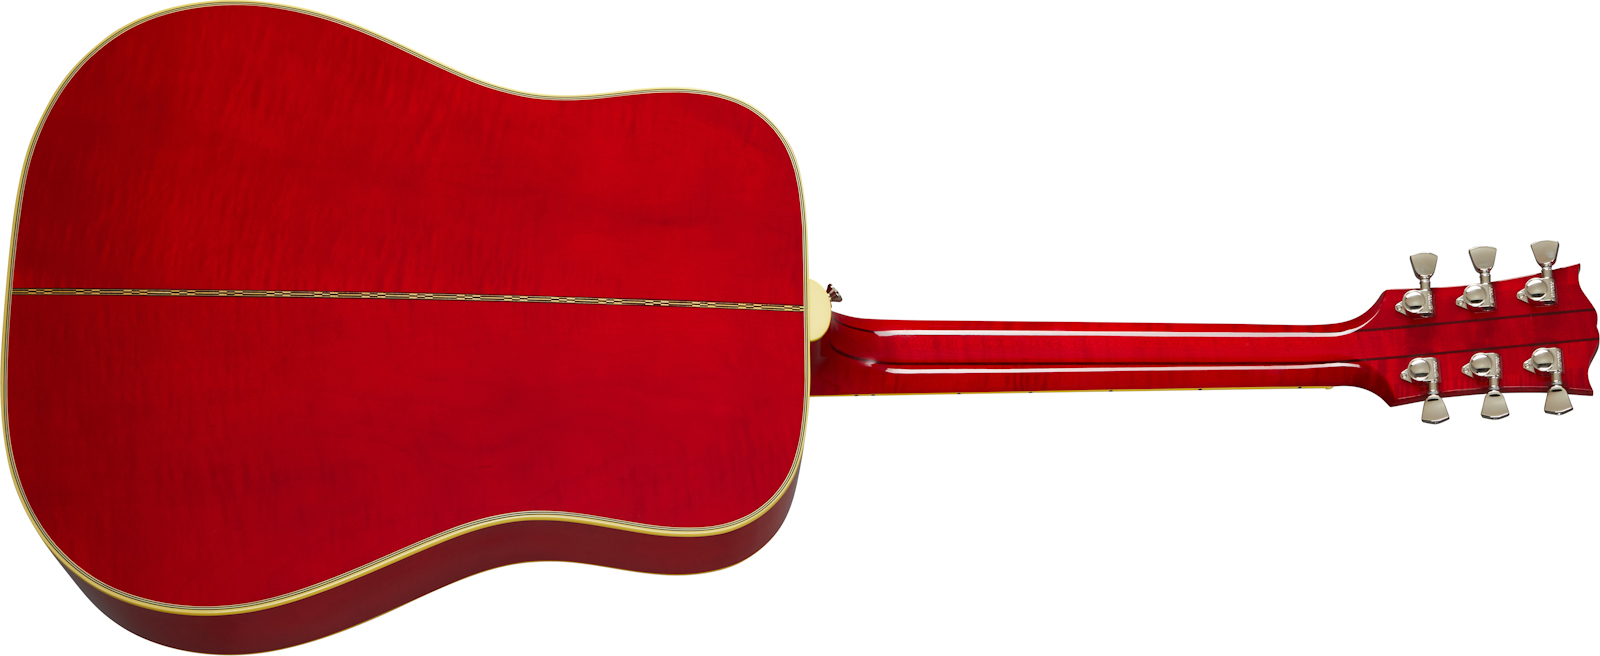 Gibson Dove Original 2020 Dreadnought Epicea Erable Rw - Antique Natural - Elektro-akoestische gitaar - Variation 1